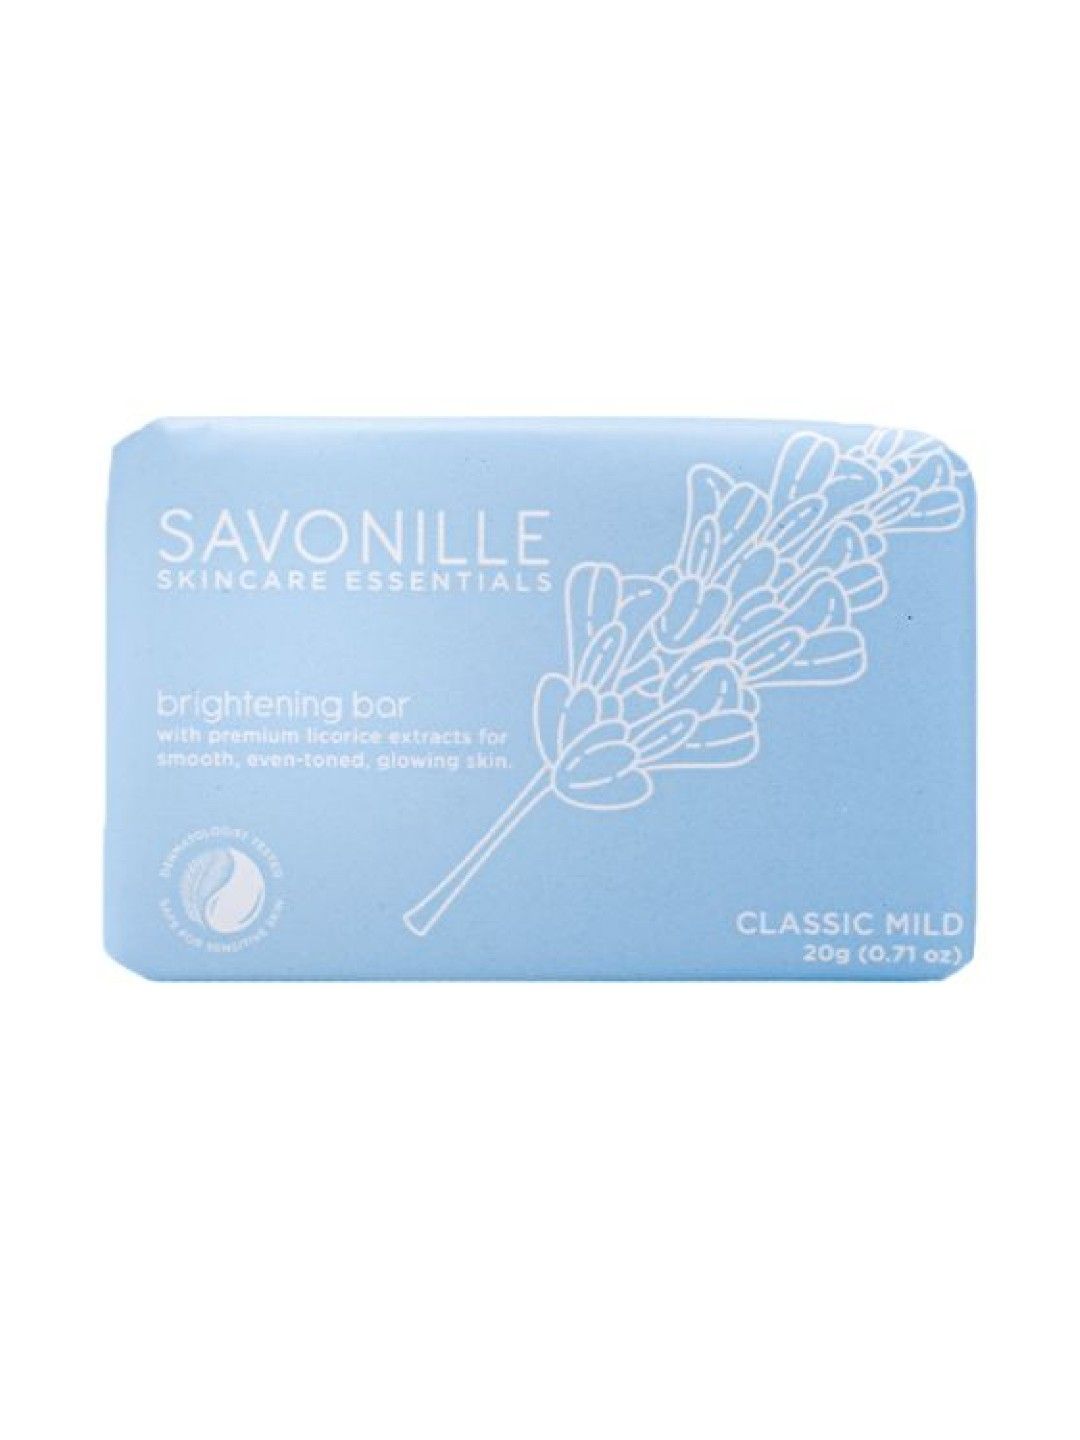 Savonille Skincare Essentials Classic Mild Travel Trio (No Color- Image 4)